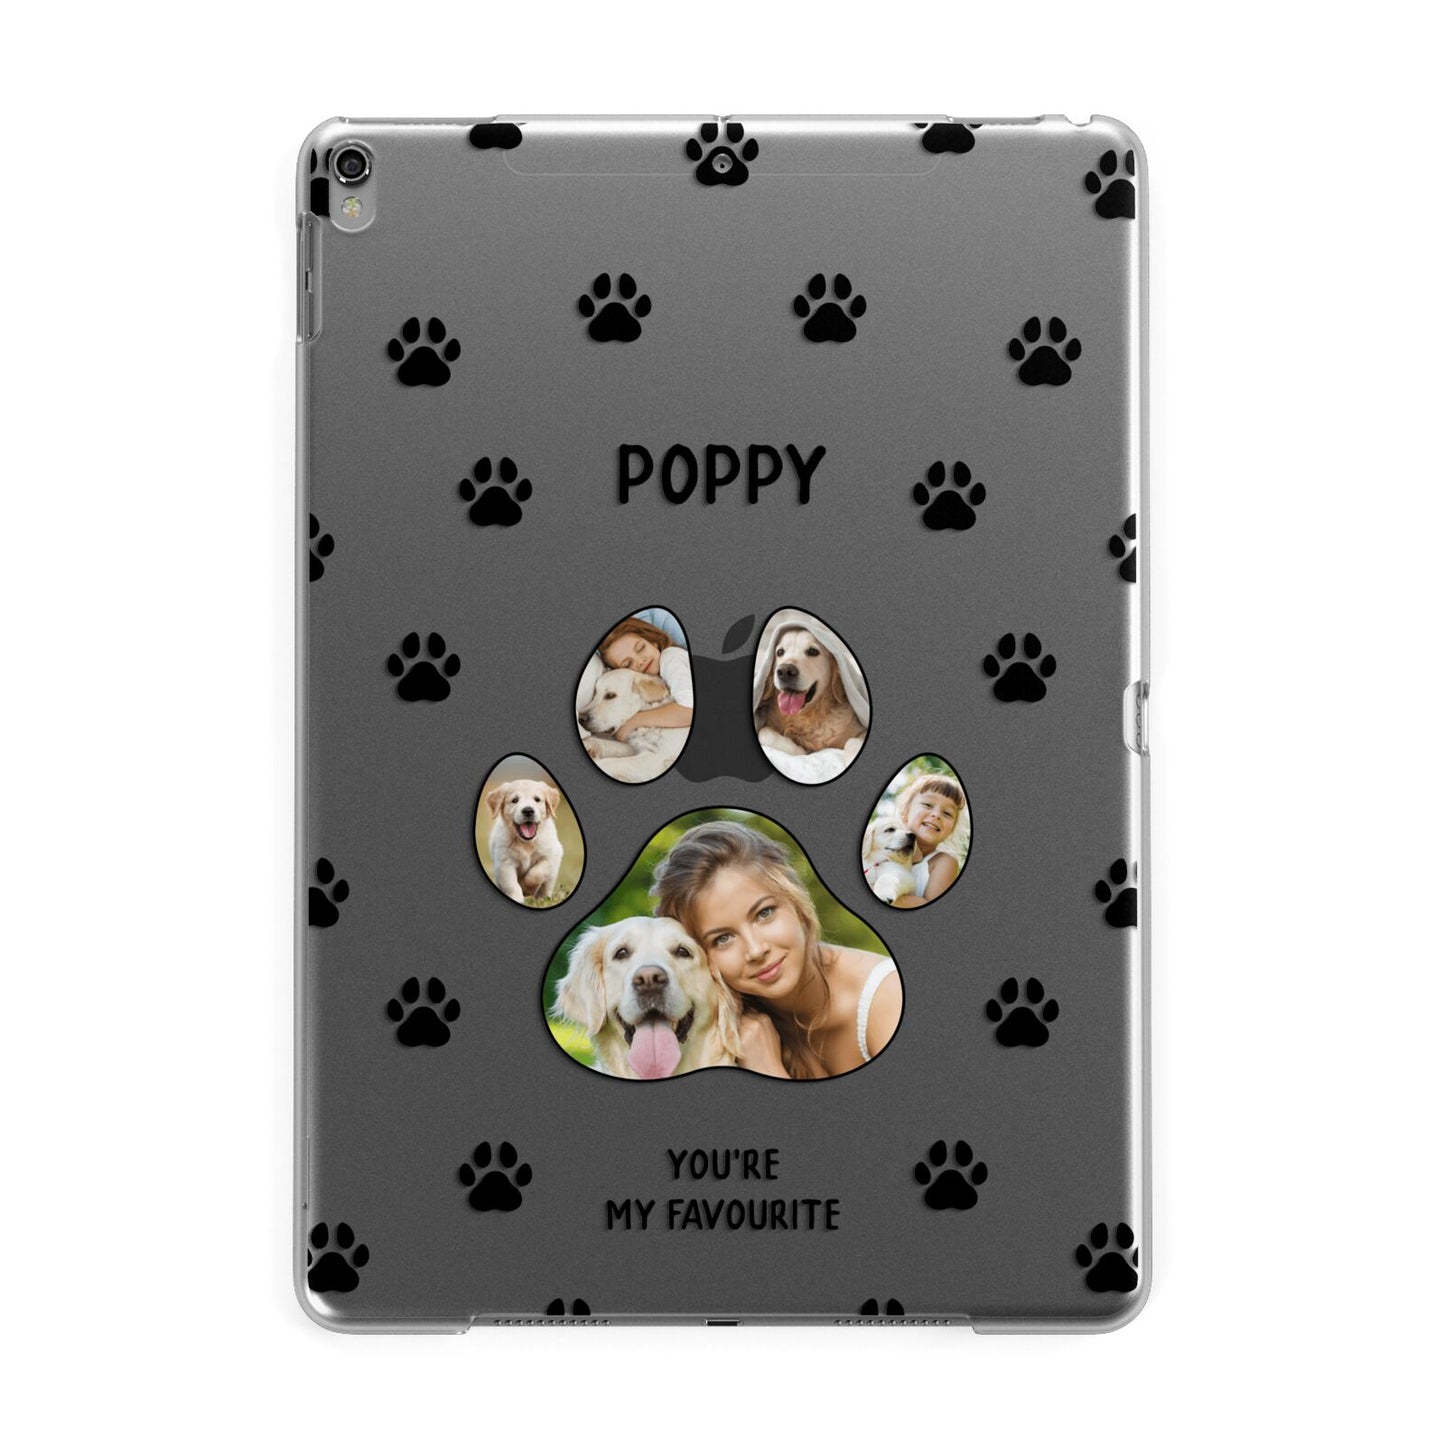 Favourite Dog Photos Personalised Apple iPad Grey Case